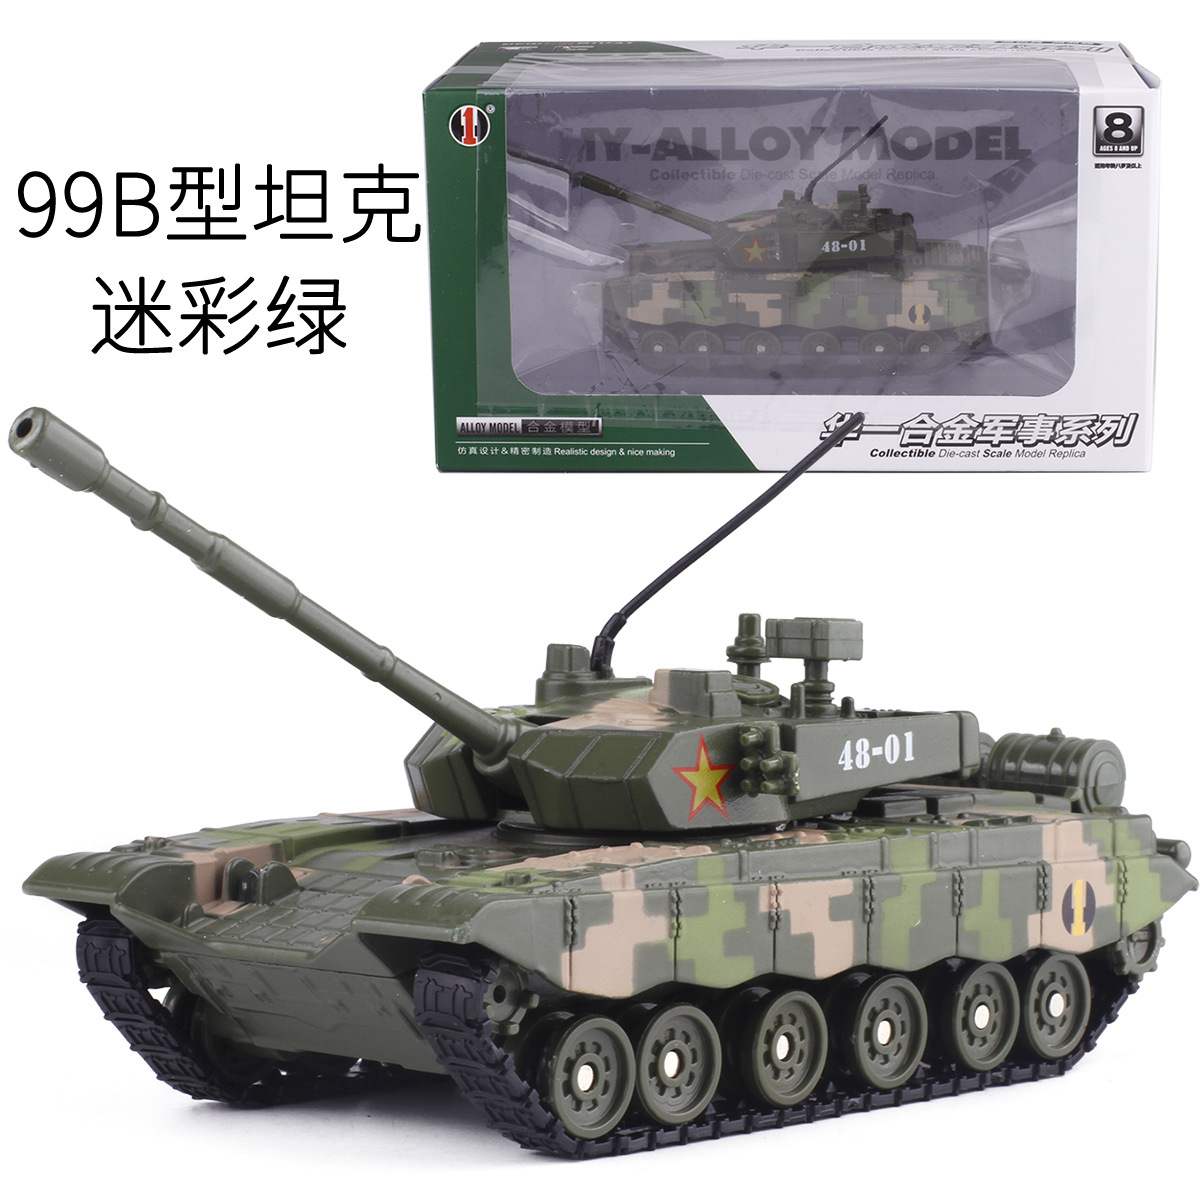 【盒装】中国主战坦克装甲车-99合金军事模型火车/摩托/汽车模型